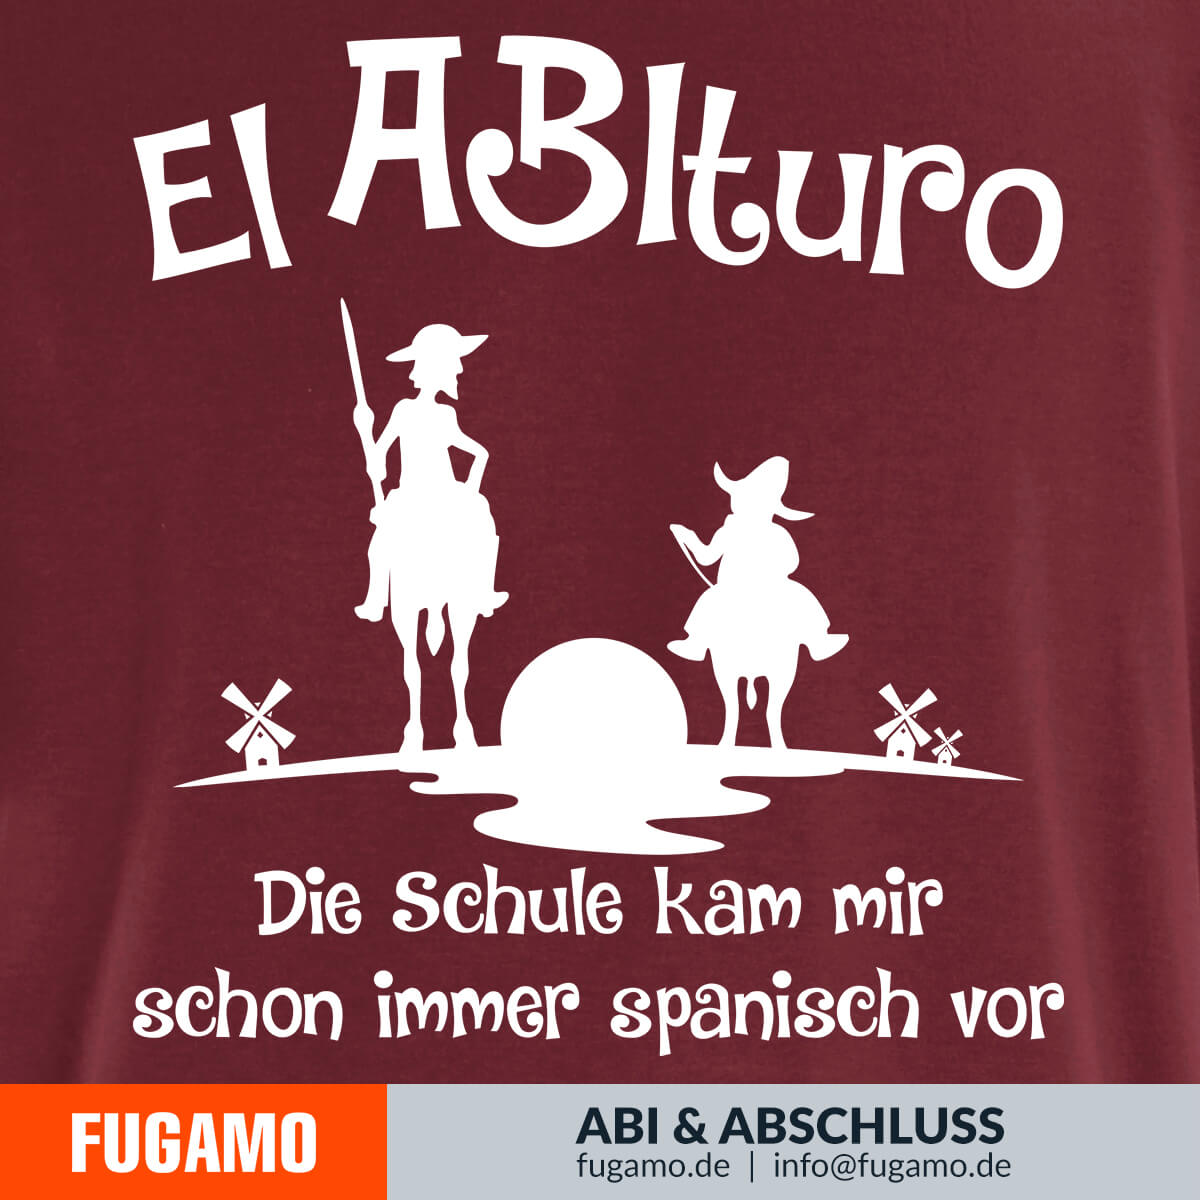 El ABIturo - 02 - Die Schule kam mir schon immer spanisch vor